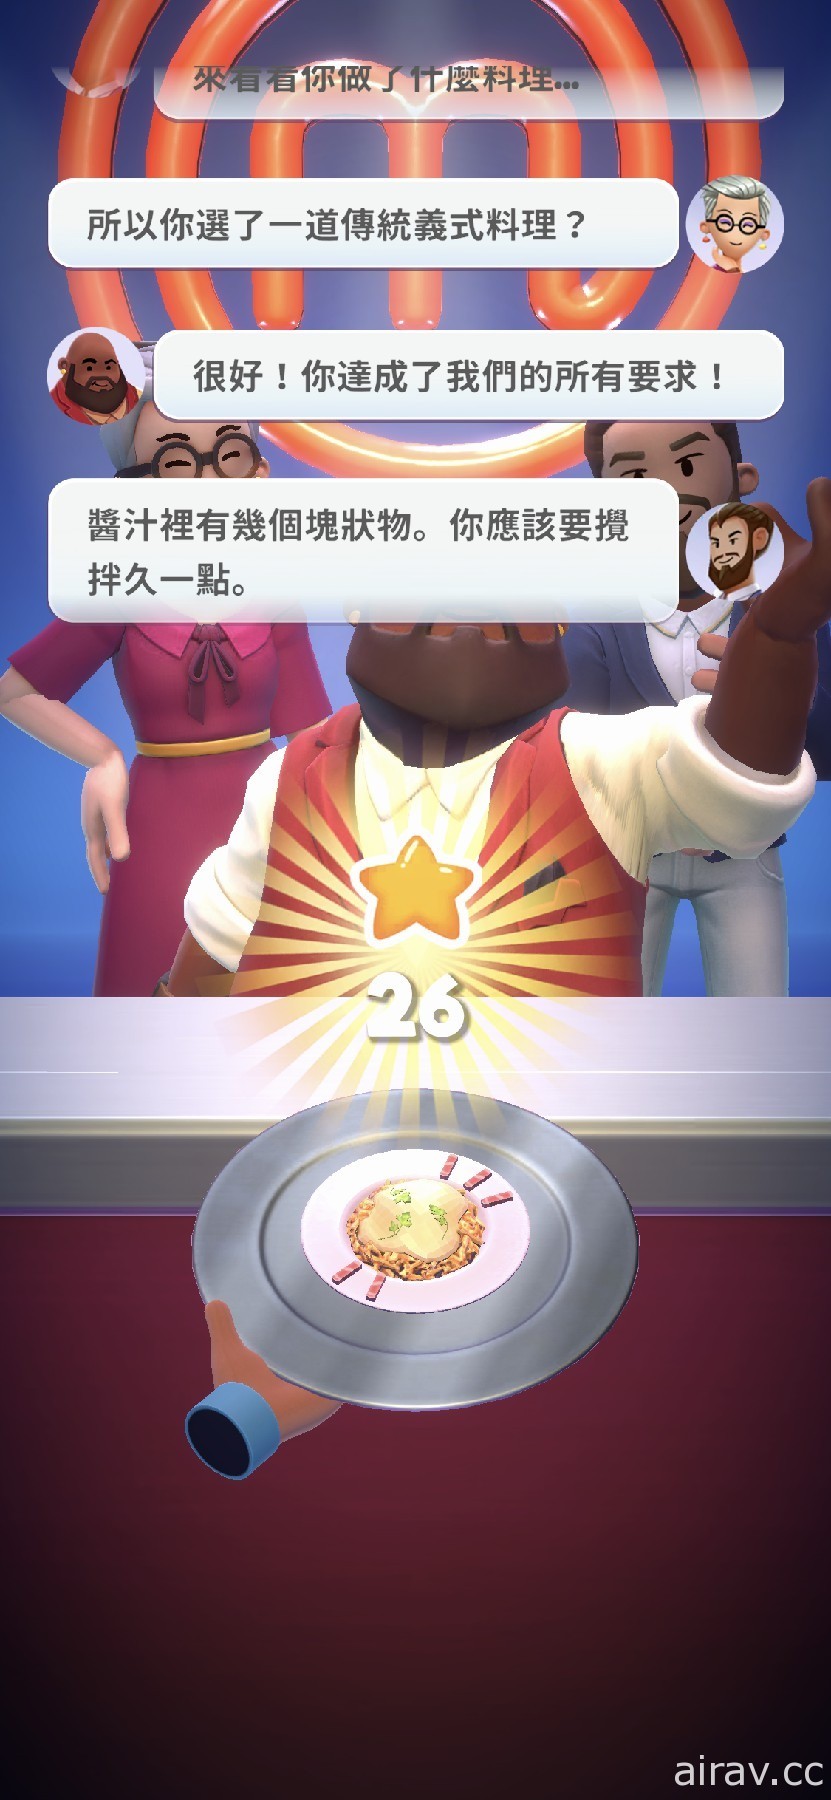 趣味烹飪競賽遊戲《MasterChef: Let』s Cook》於 Apple Arcade 推出 展現廚藝的時刻到了